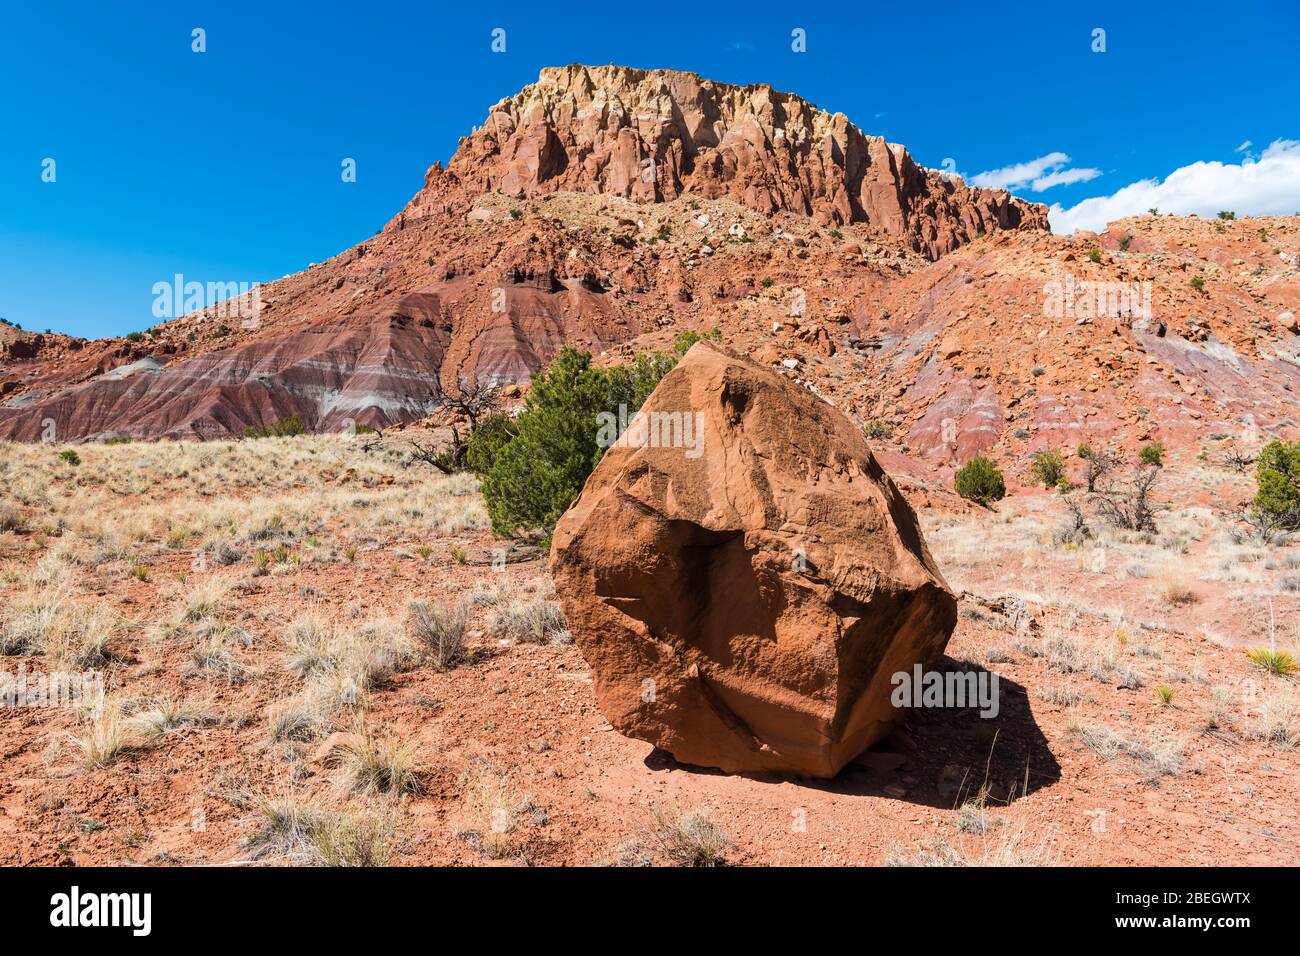 Gran roca en un paisaje desértico con una colorida meseta al fondo cerca de Abiquiu, Nuevo México Foto de stock